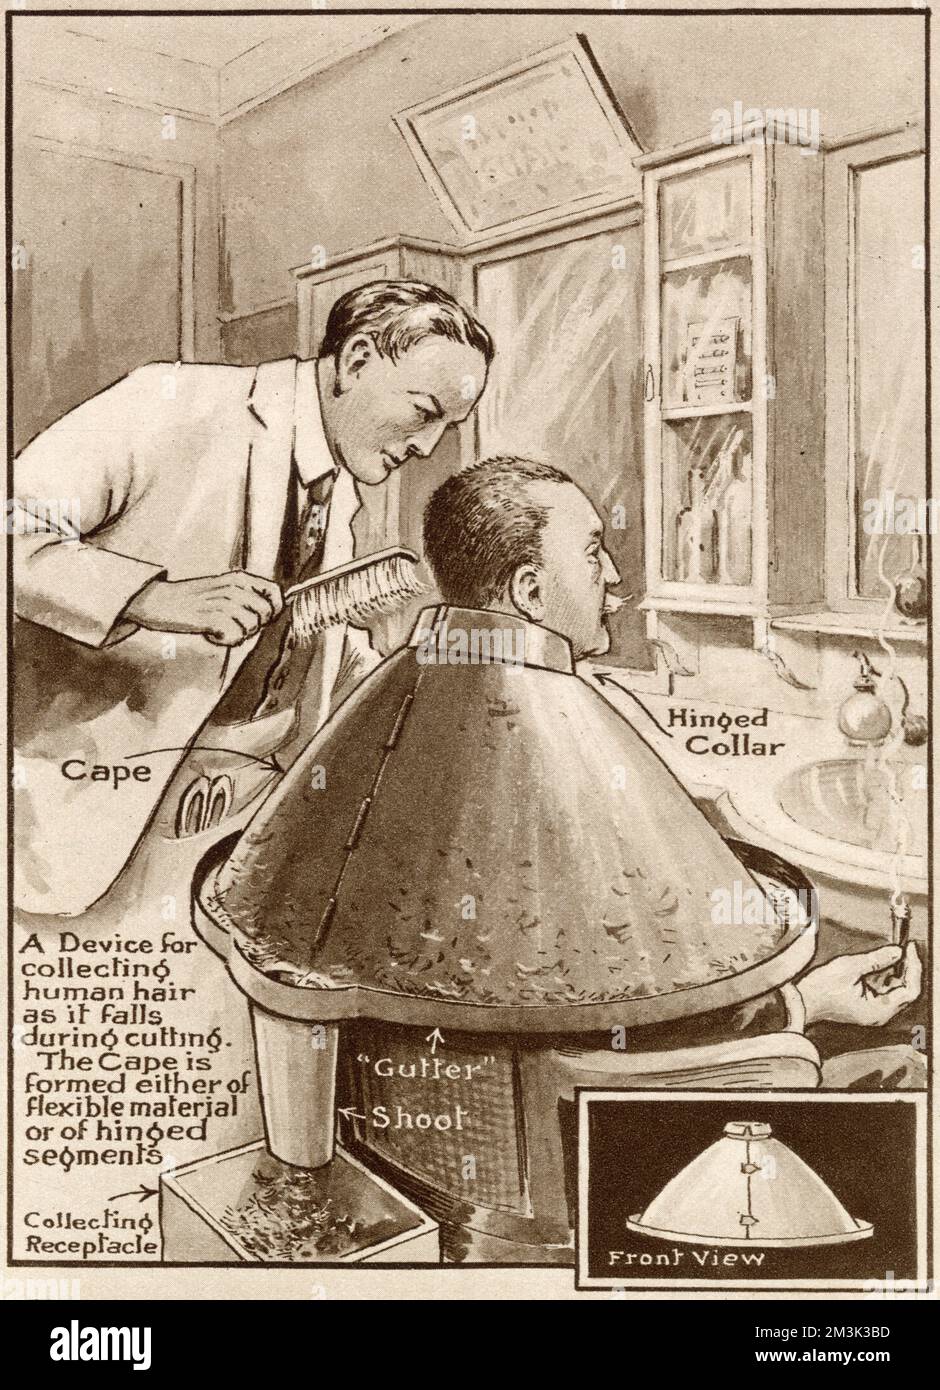 Un collo e un mantello da parrucchiere di nuova concezione, progettati per raccogliere i capelli mentre venivano tagliati. Foto Stock